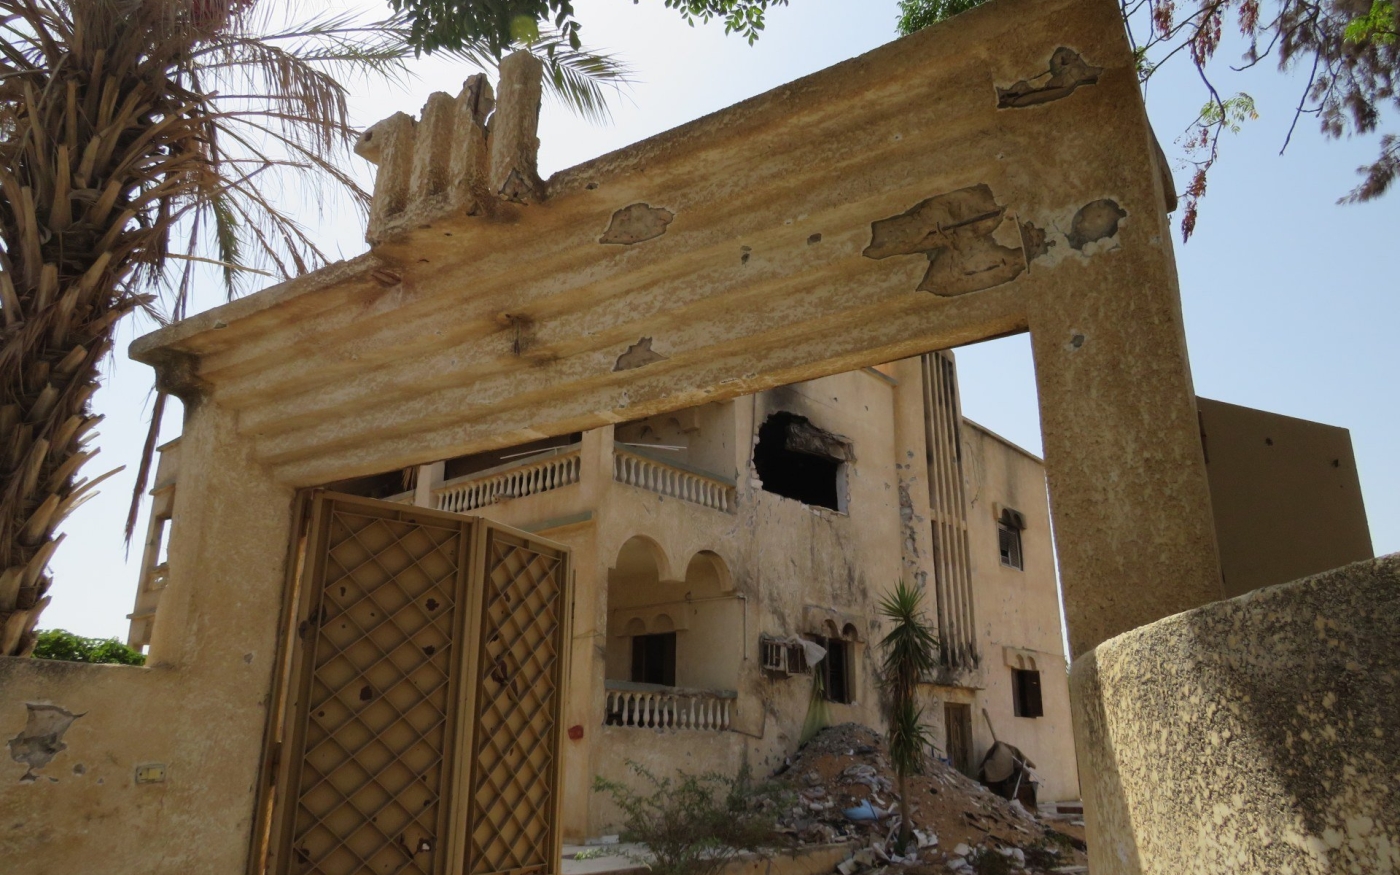 Une maison endommagée à Ain Zara. Ce quartier était en première ligne de l’offensive de l’ANL sur la capitale libyenne (MEE/Daniel Hilton)